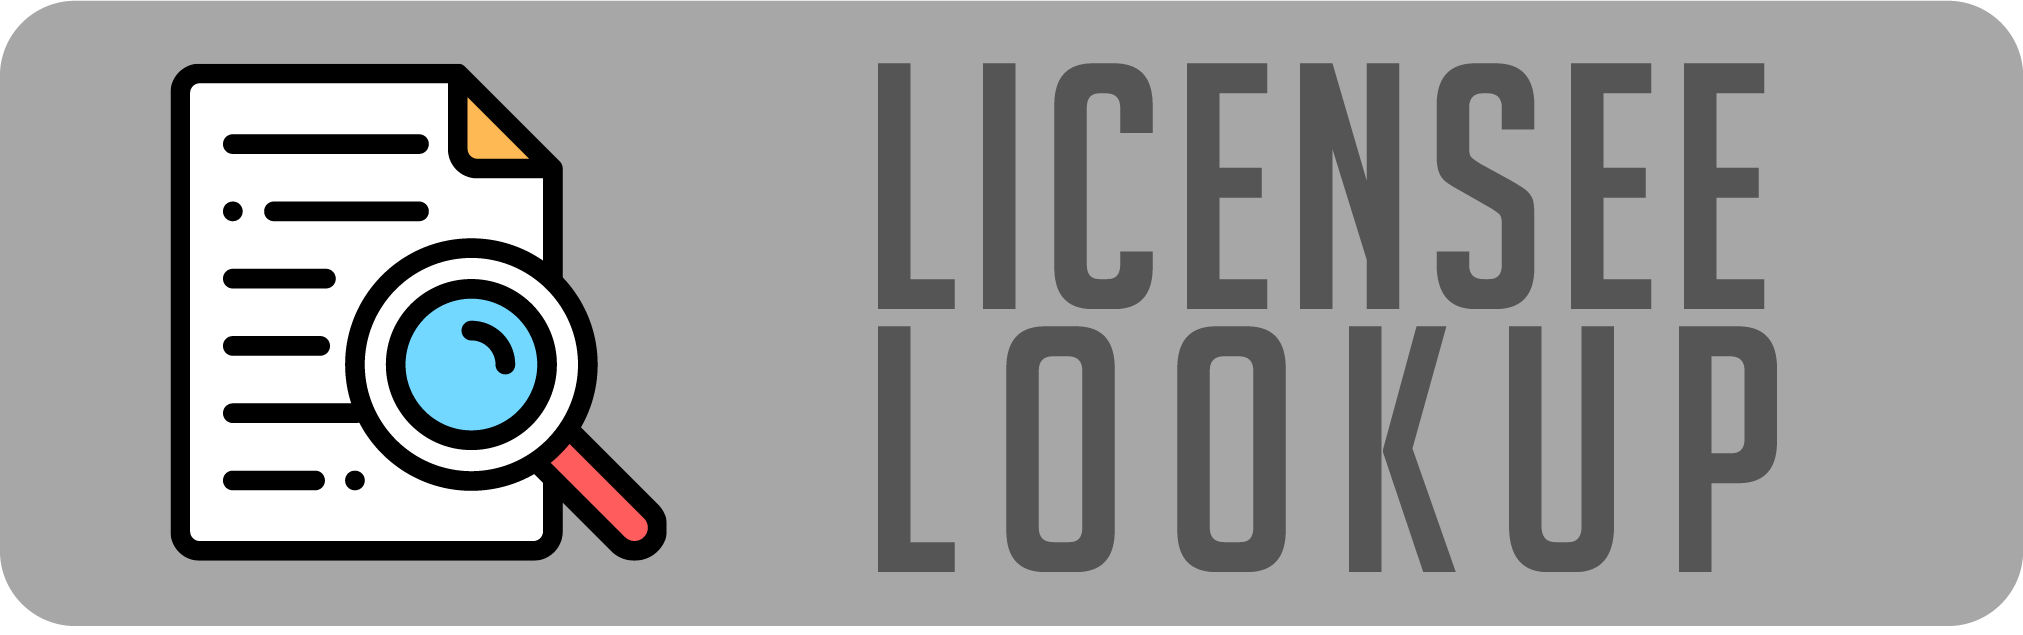 Licensee Lookup